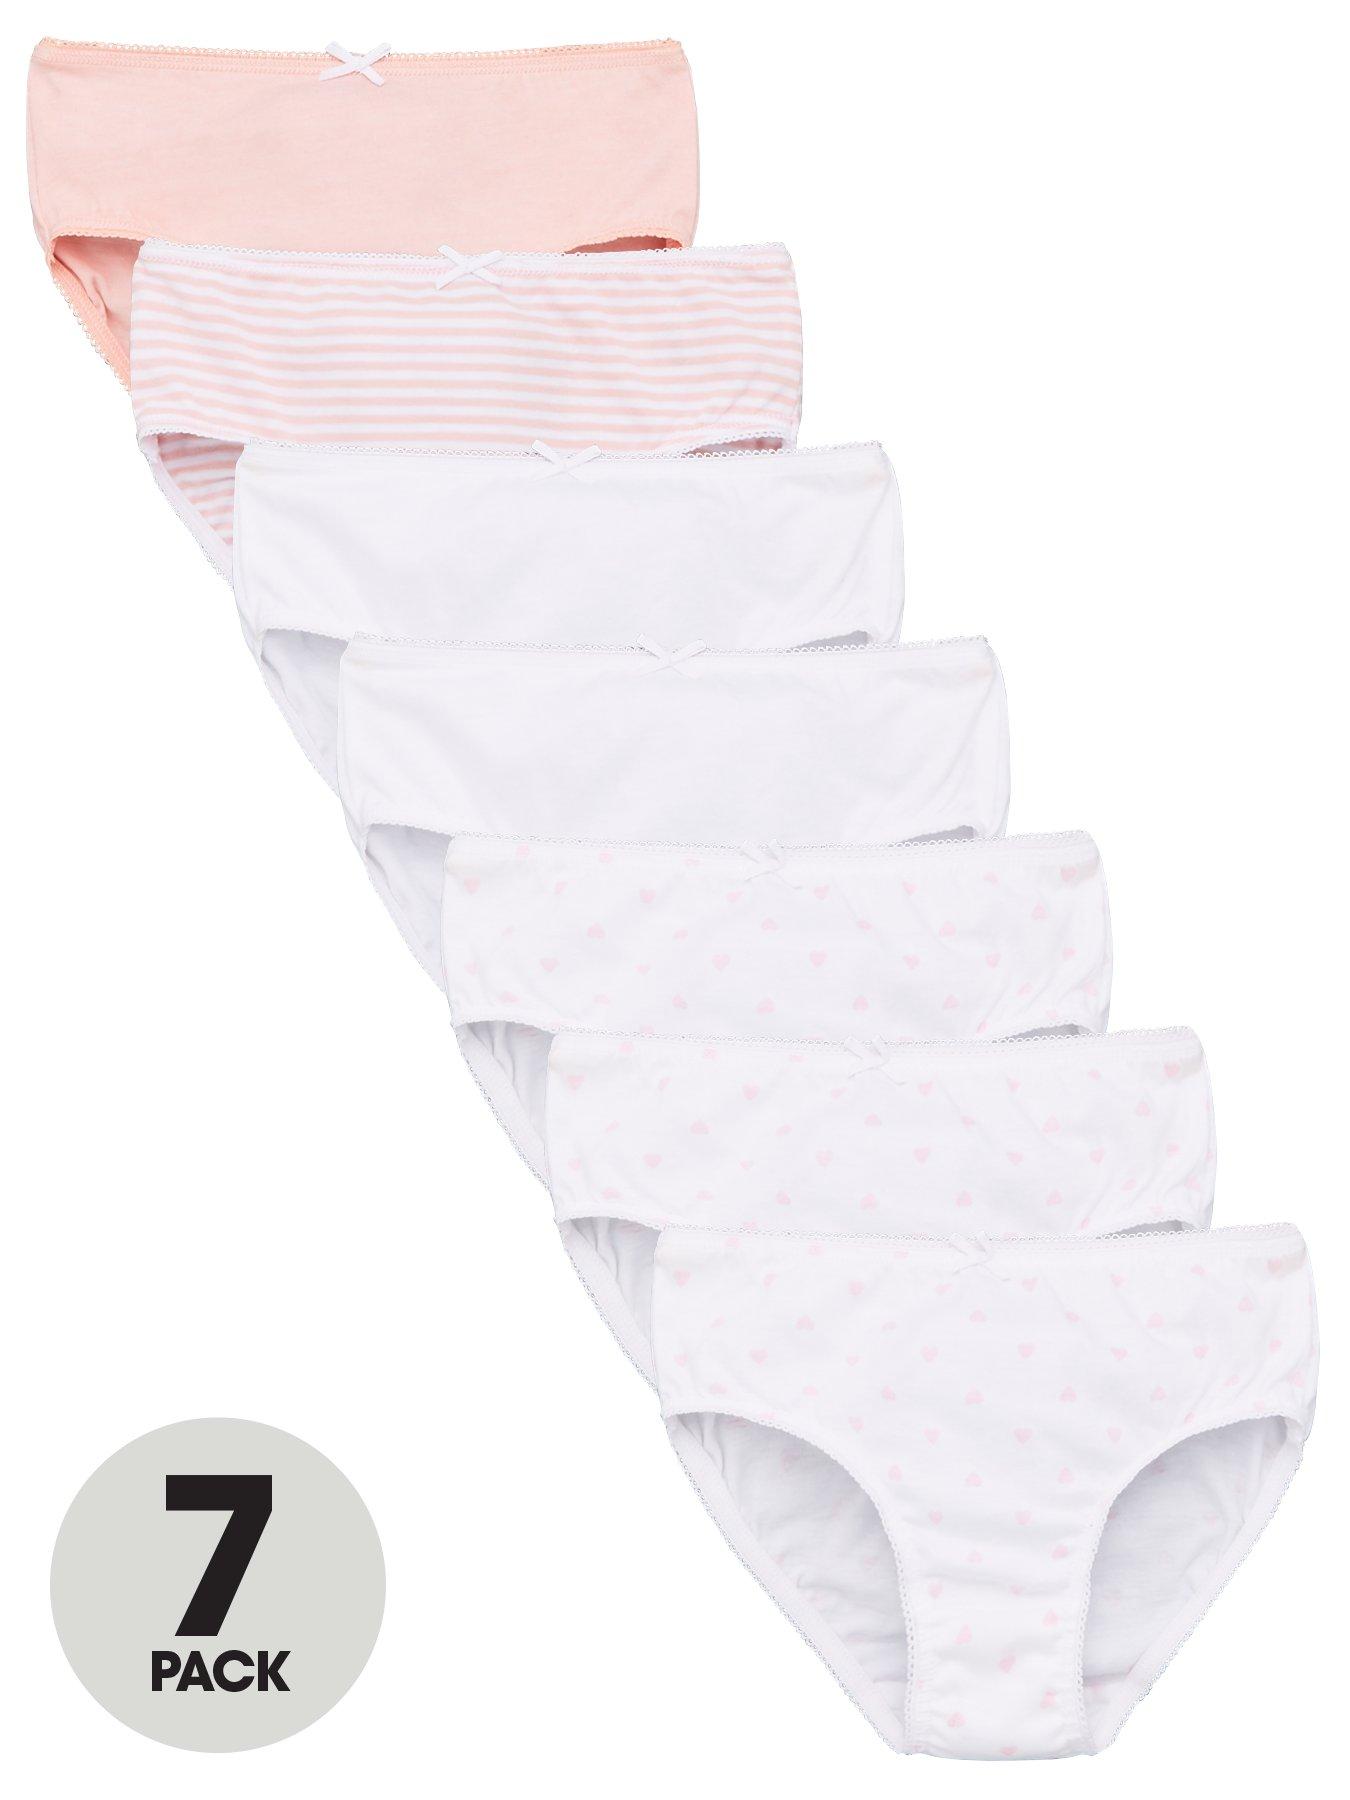 Girls 4-10 Shopkins 7-pk. Brief Underwear